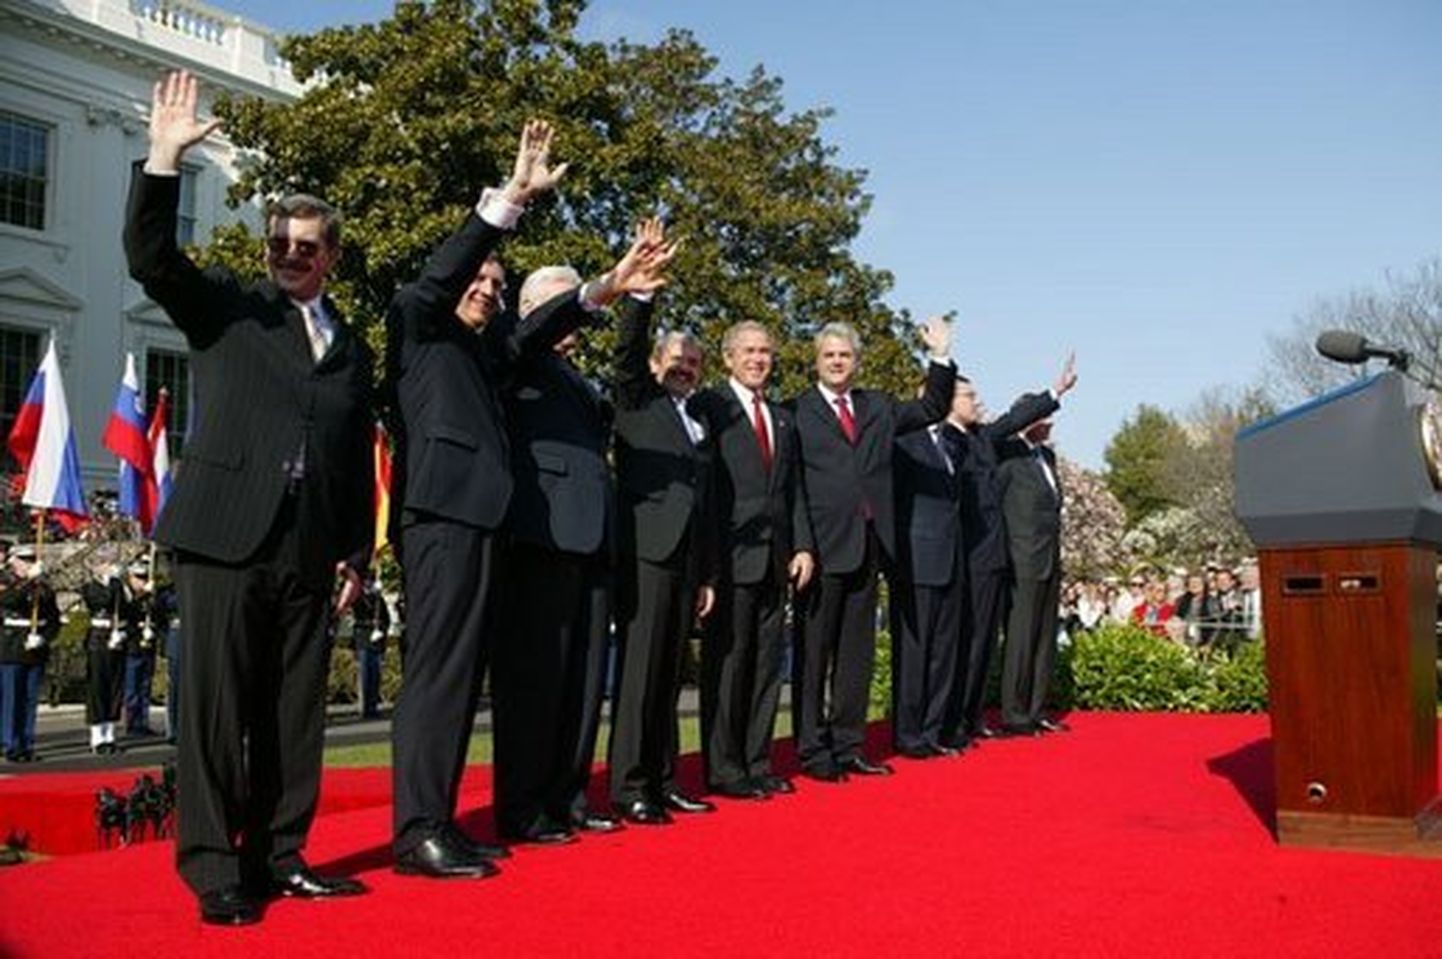 NATO riikide juhid pärast uute liikmesriikide pidulikku vastuvõtmist 2004. aastal